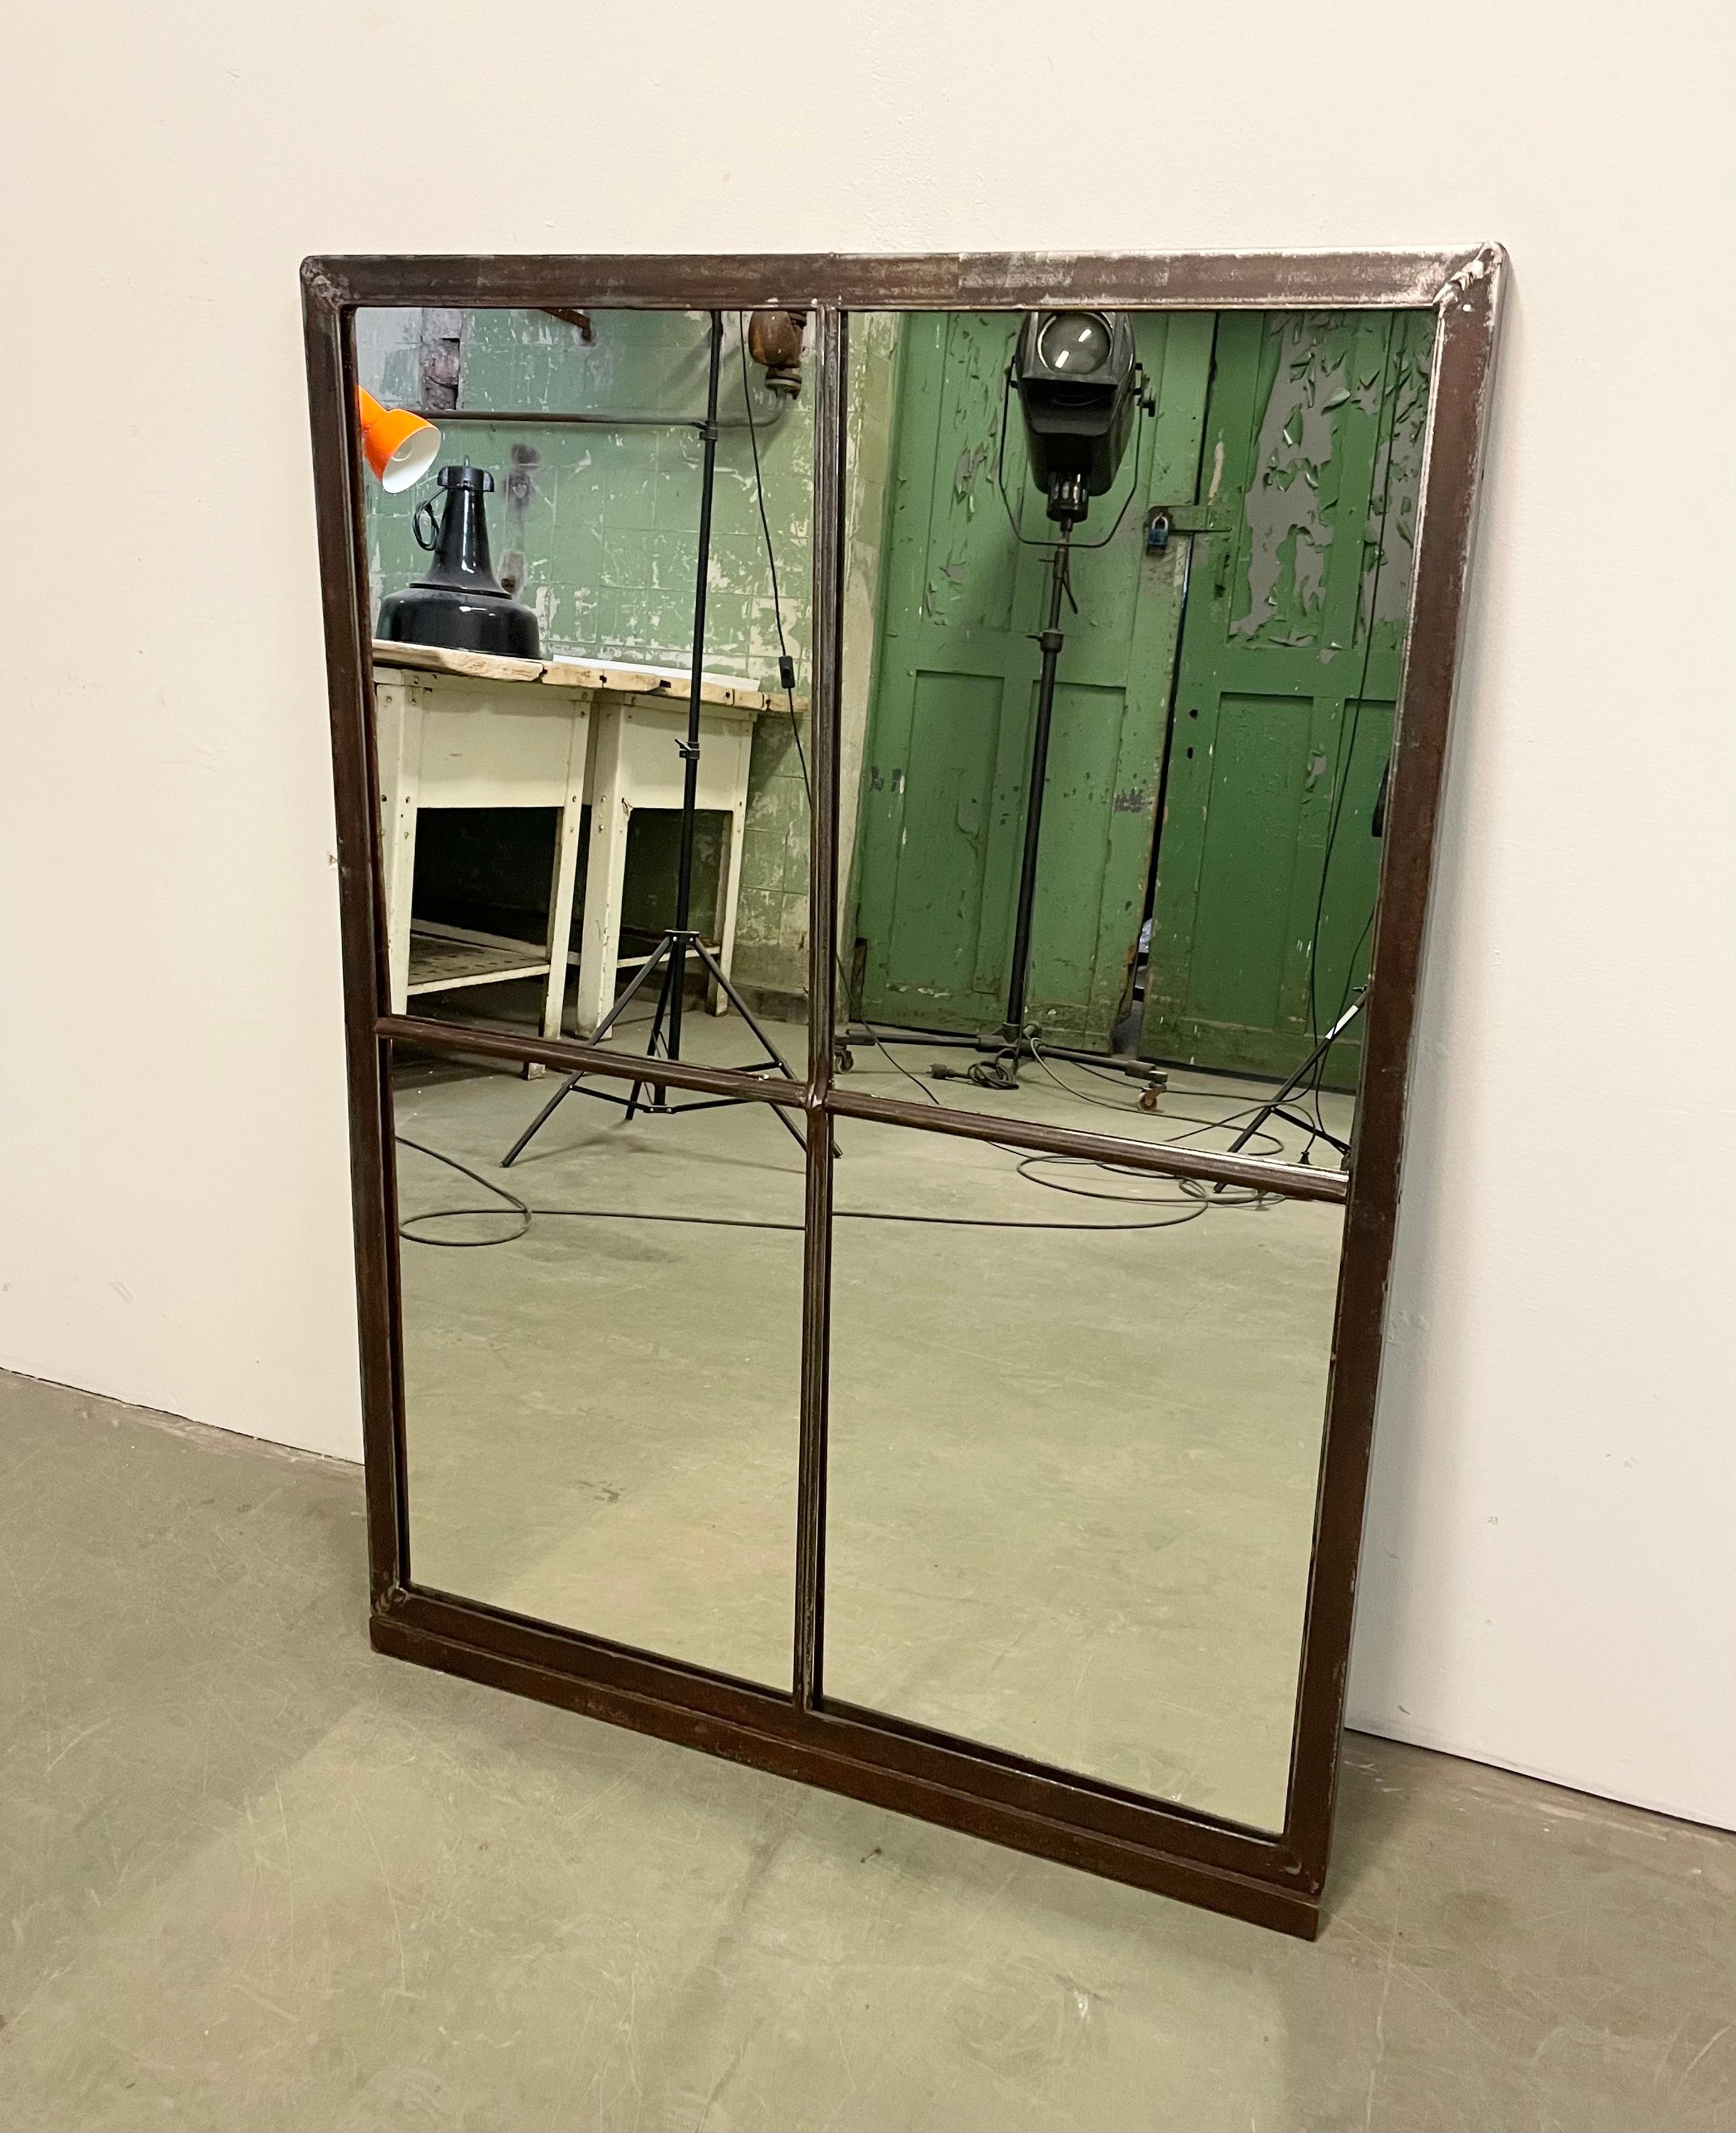 Dieser industrielle Fensterrahmen aus Eisen wurde in einen Spiegel verwandelt. Das Gewicht des Spiegels beträgt 17 kg.